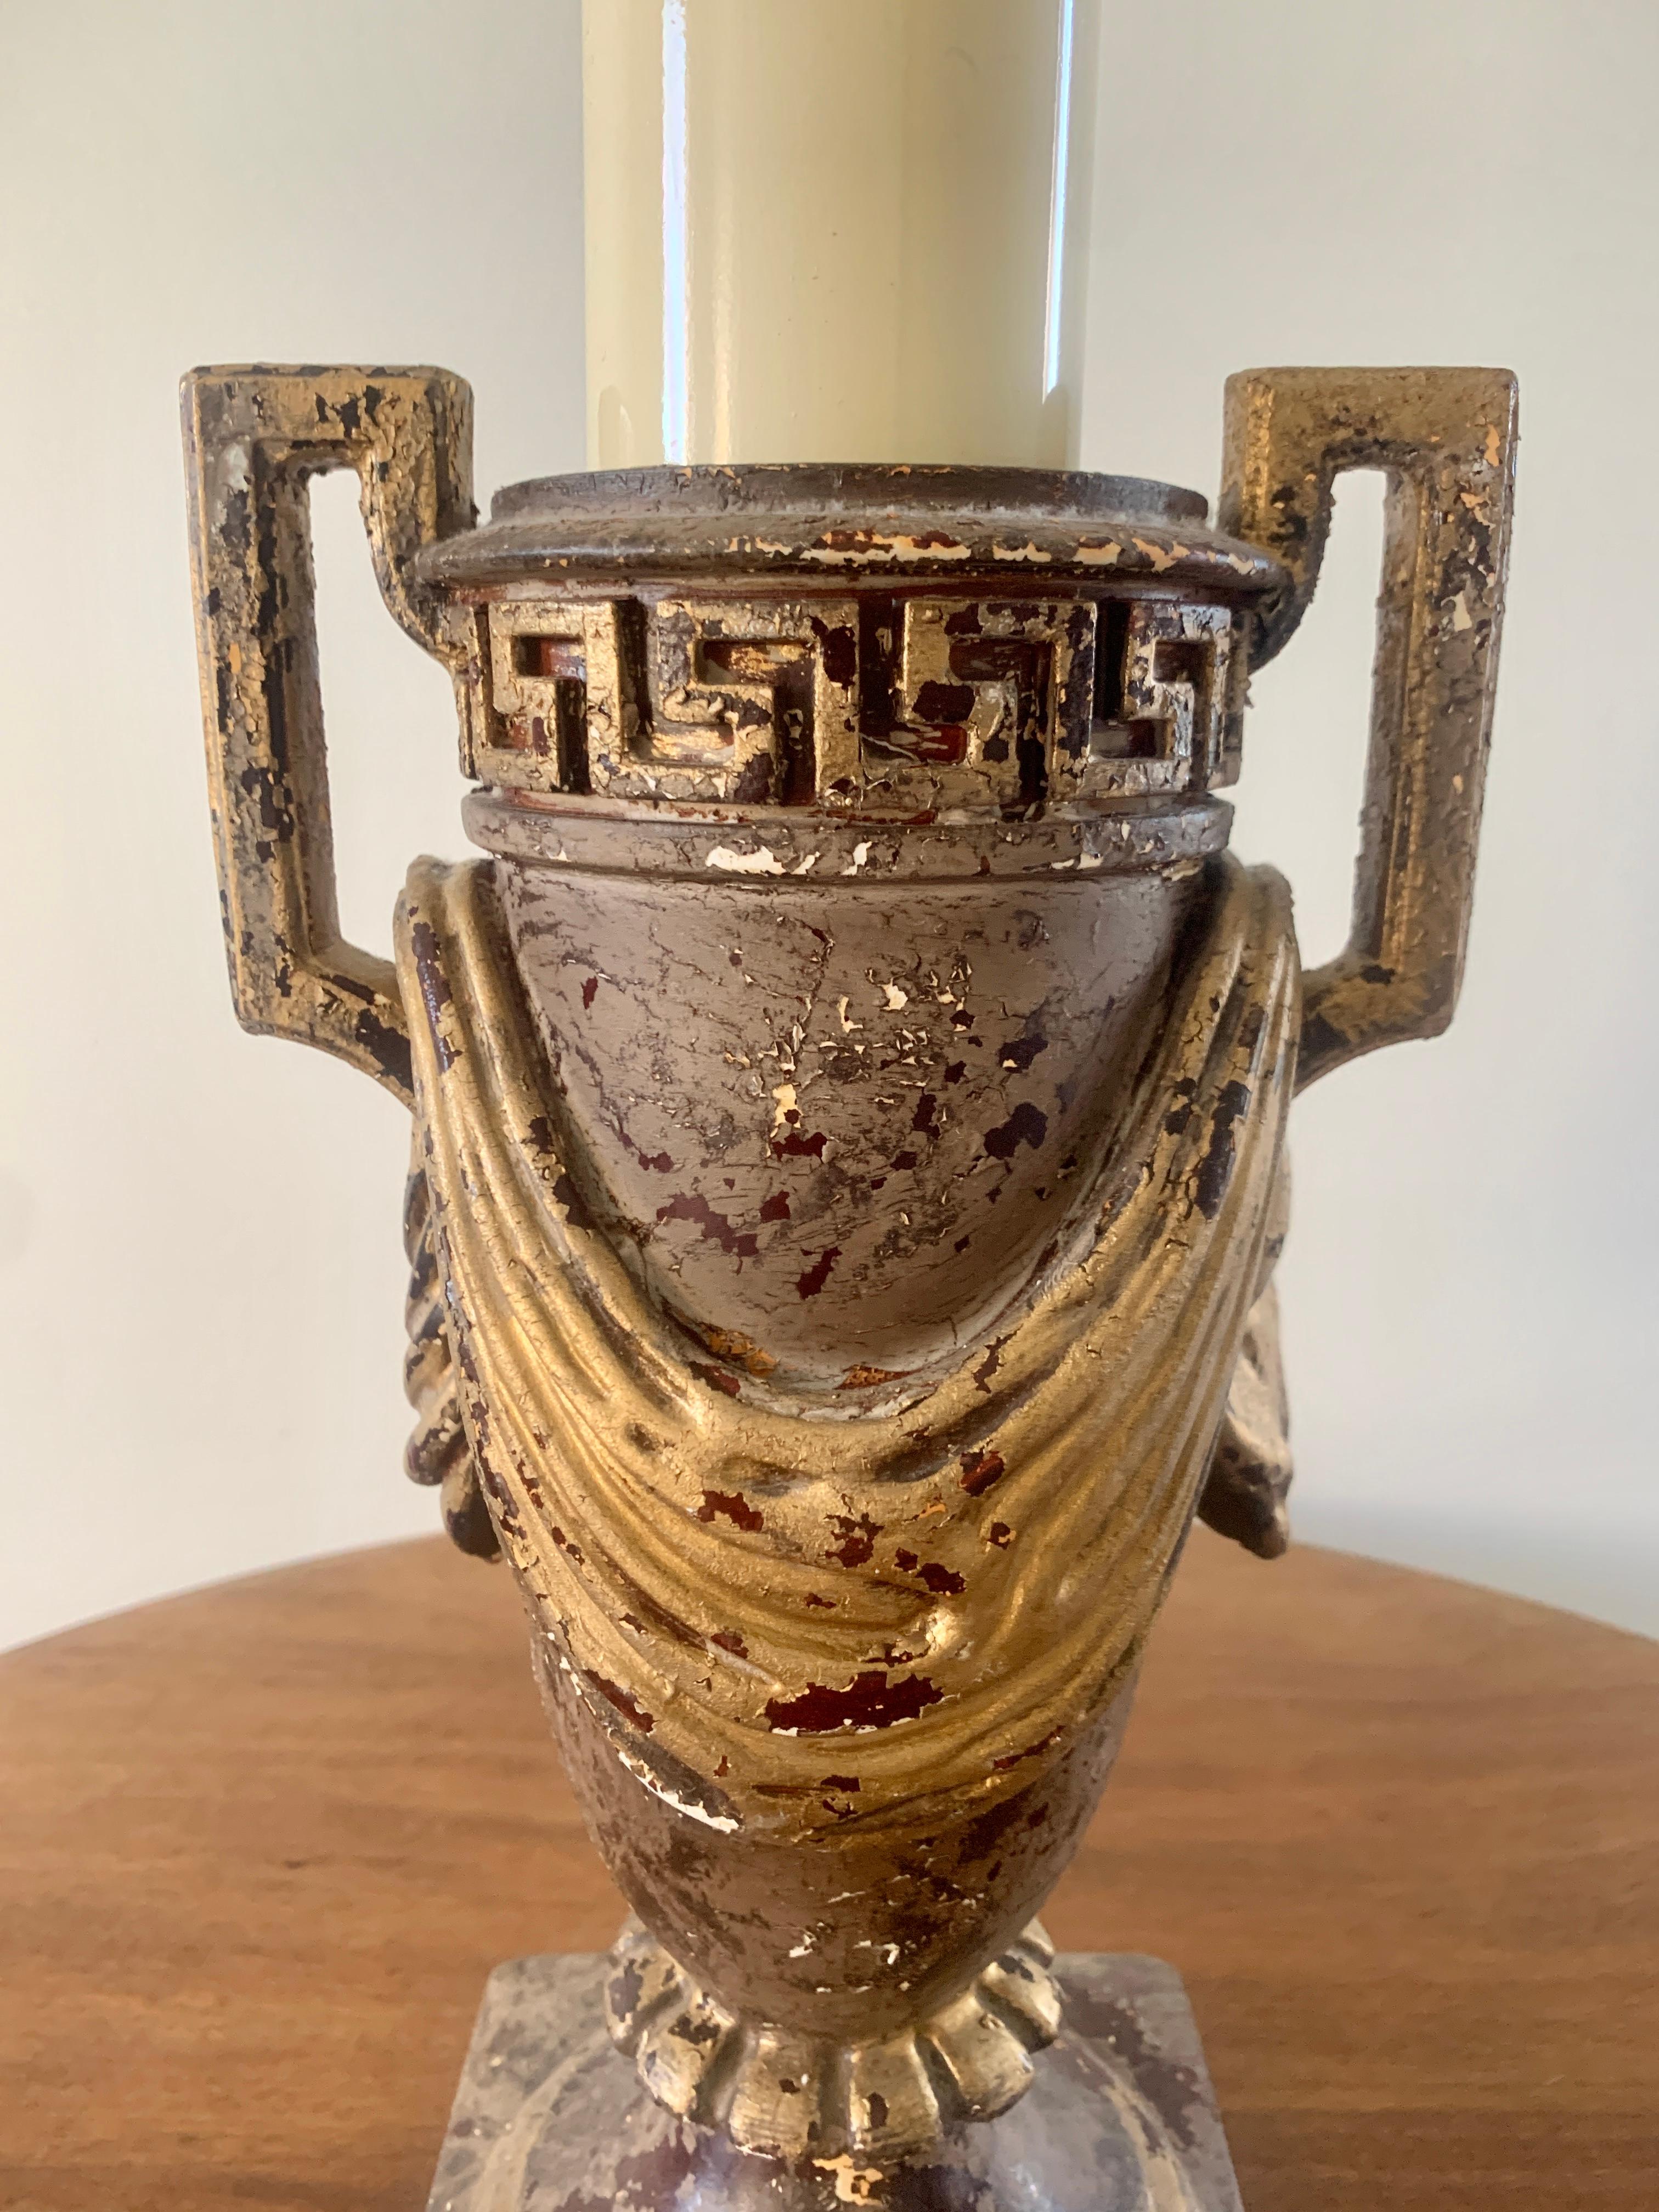 Eine wunderschöne Tischlampe in Form einer Urne im neoklassischen Stil mit griechischem Schlüssel und Swag-Details

Maße: 5,75 